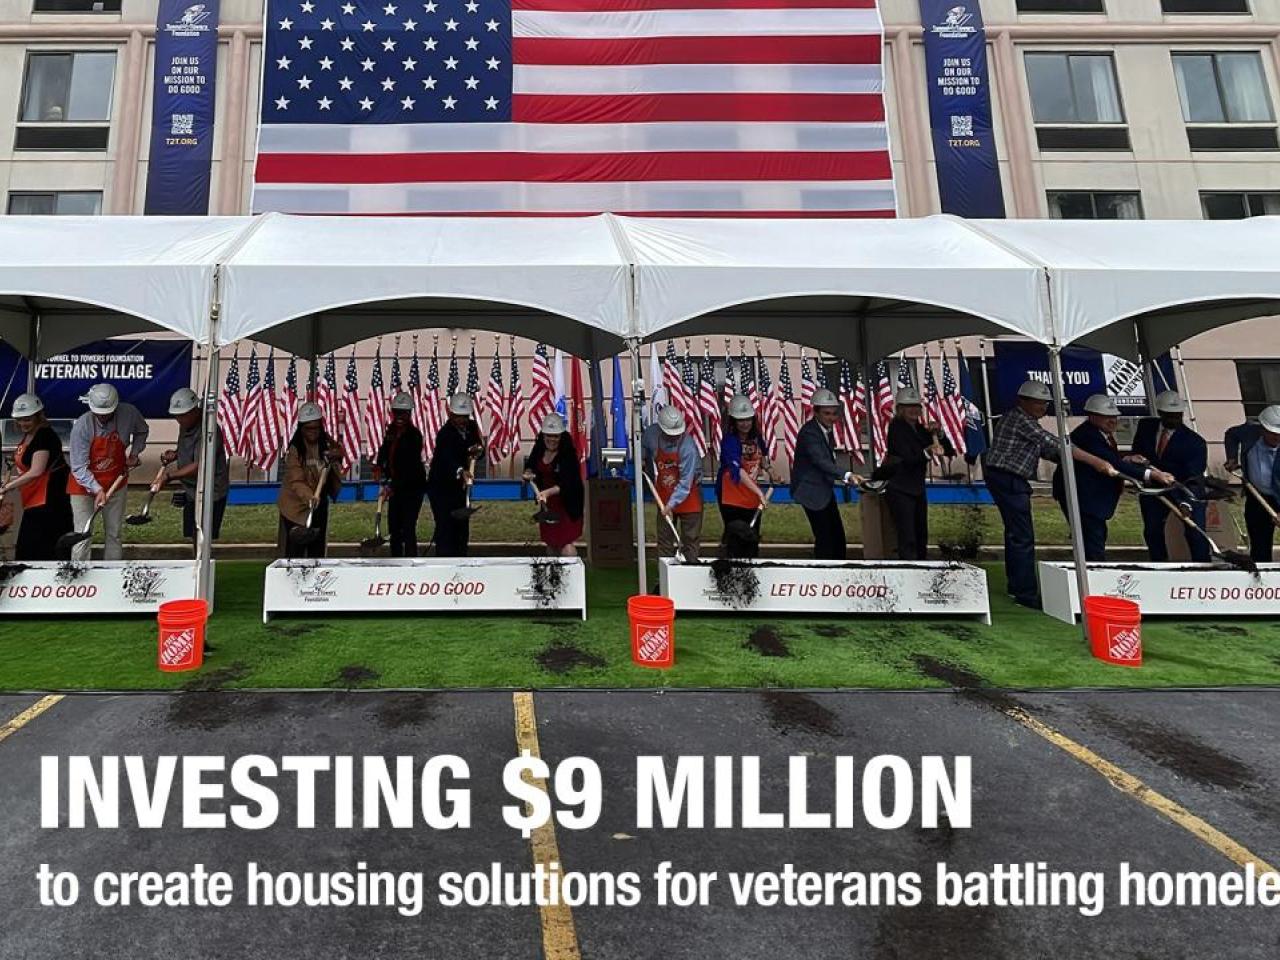 Investing $9 Million to create housing solutions for veterans battling homelessness.